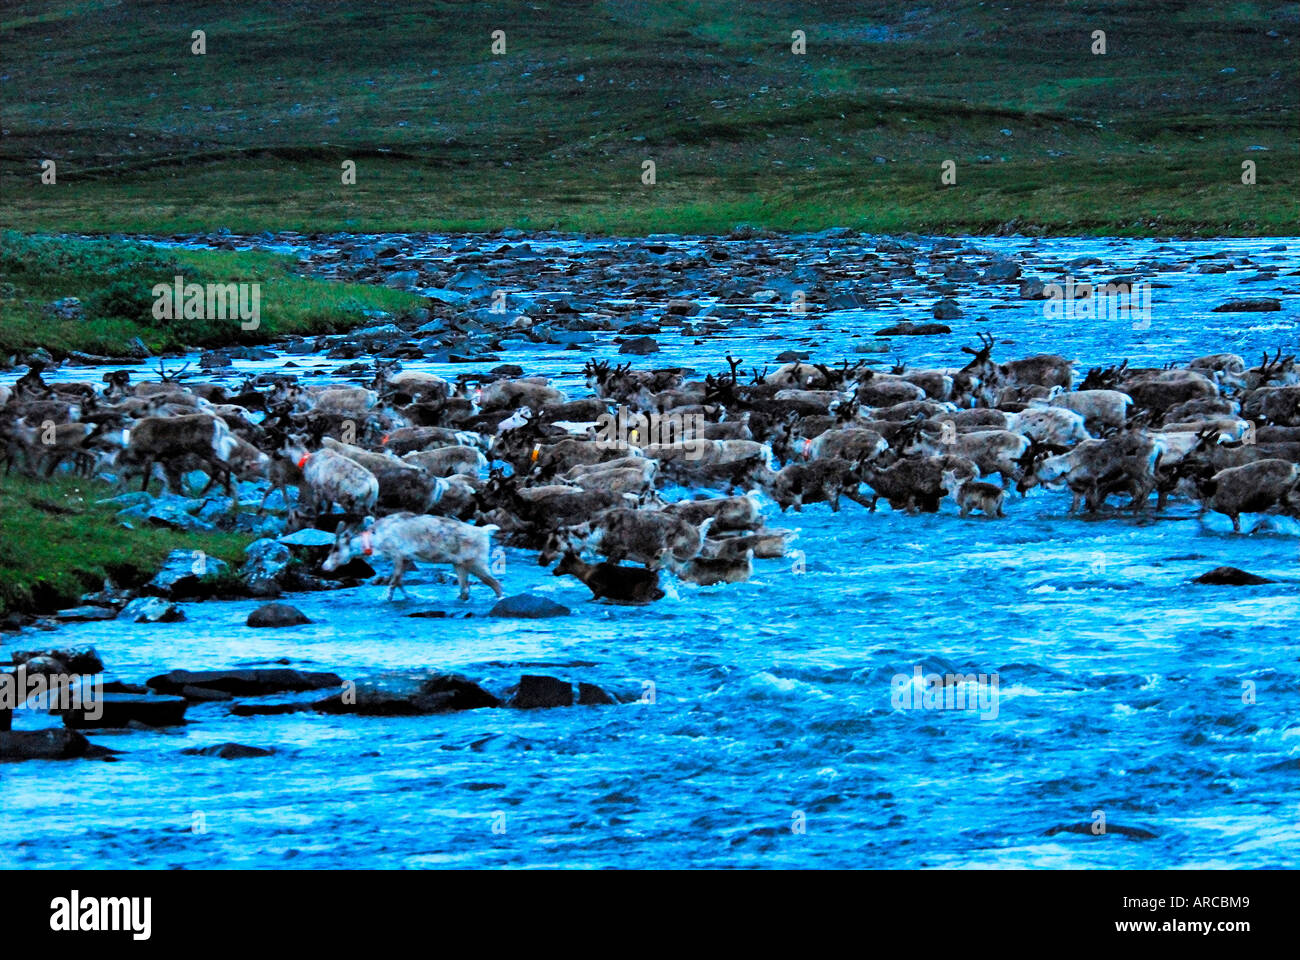 Rentiere durchqueren nachts nach dem Markieren der Kälber einen Fluß Stock Photo